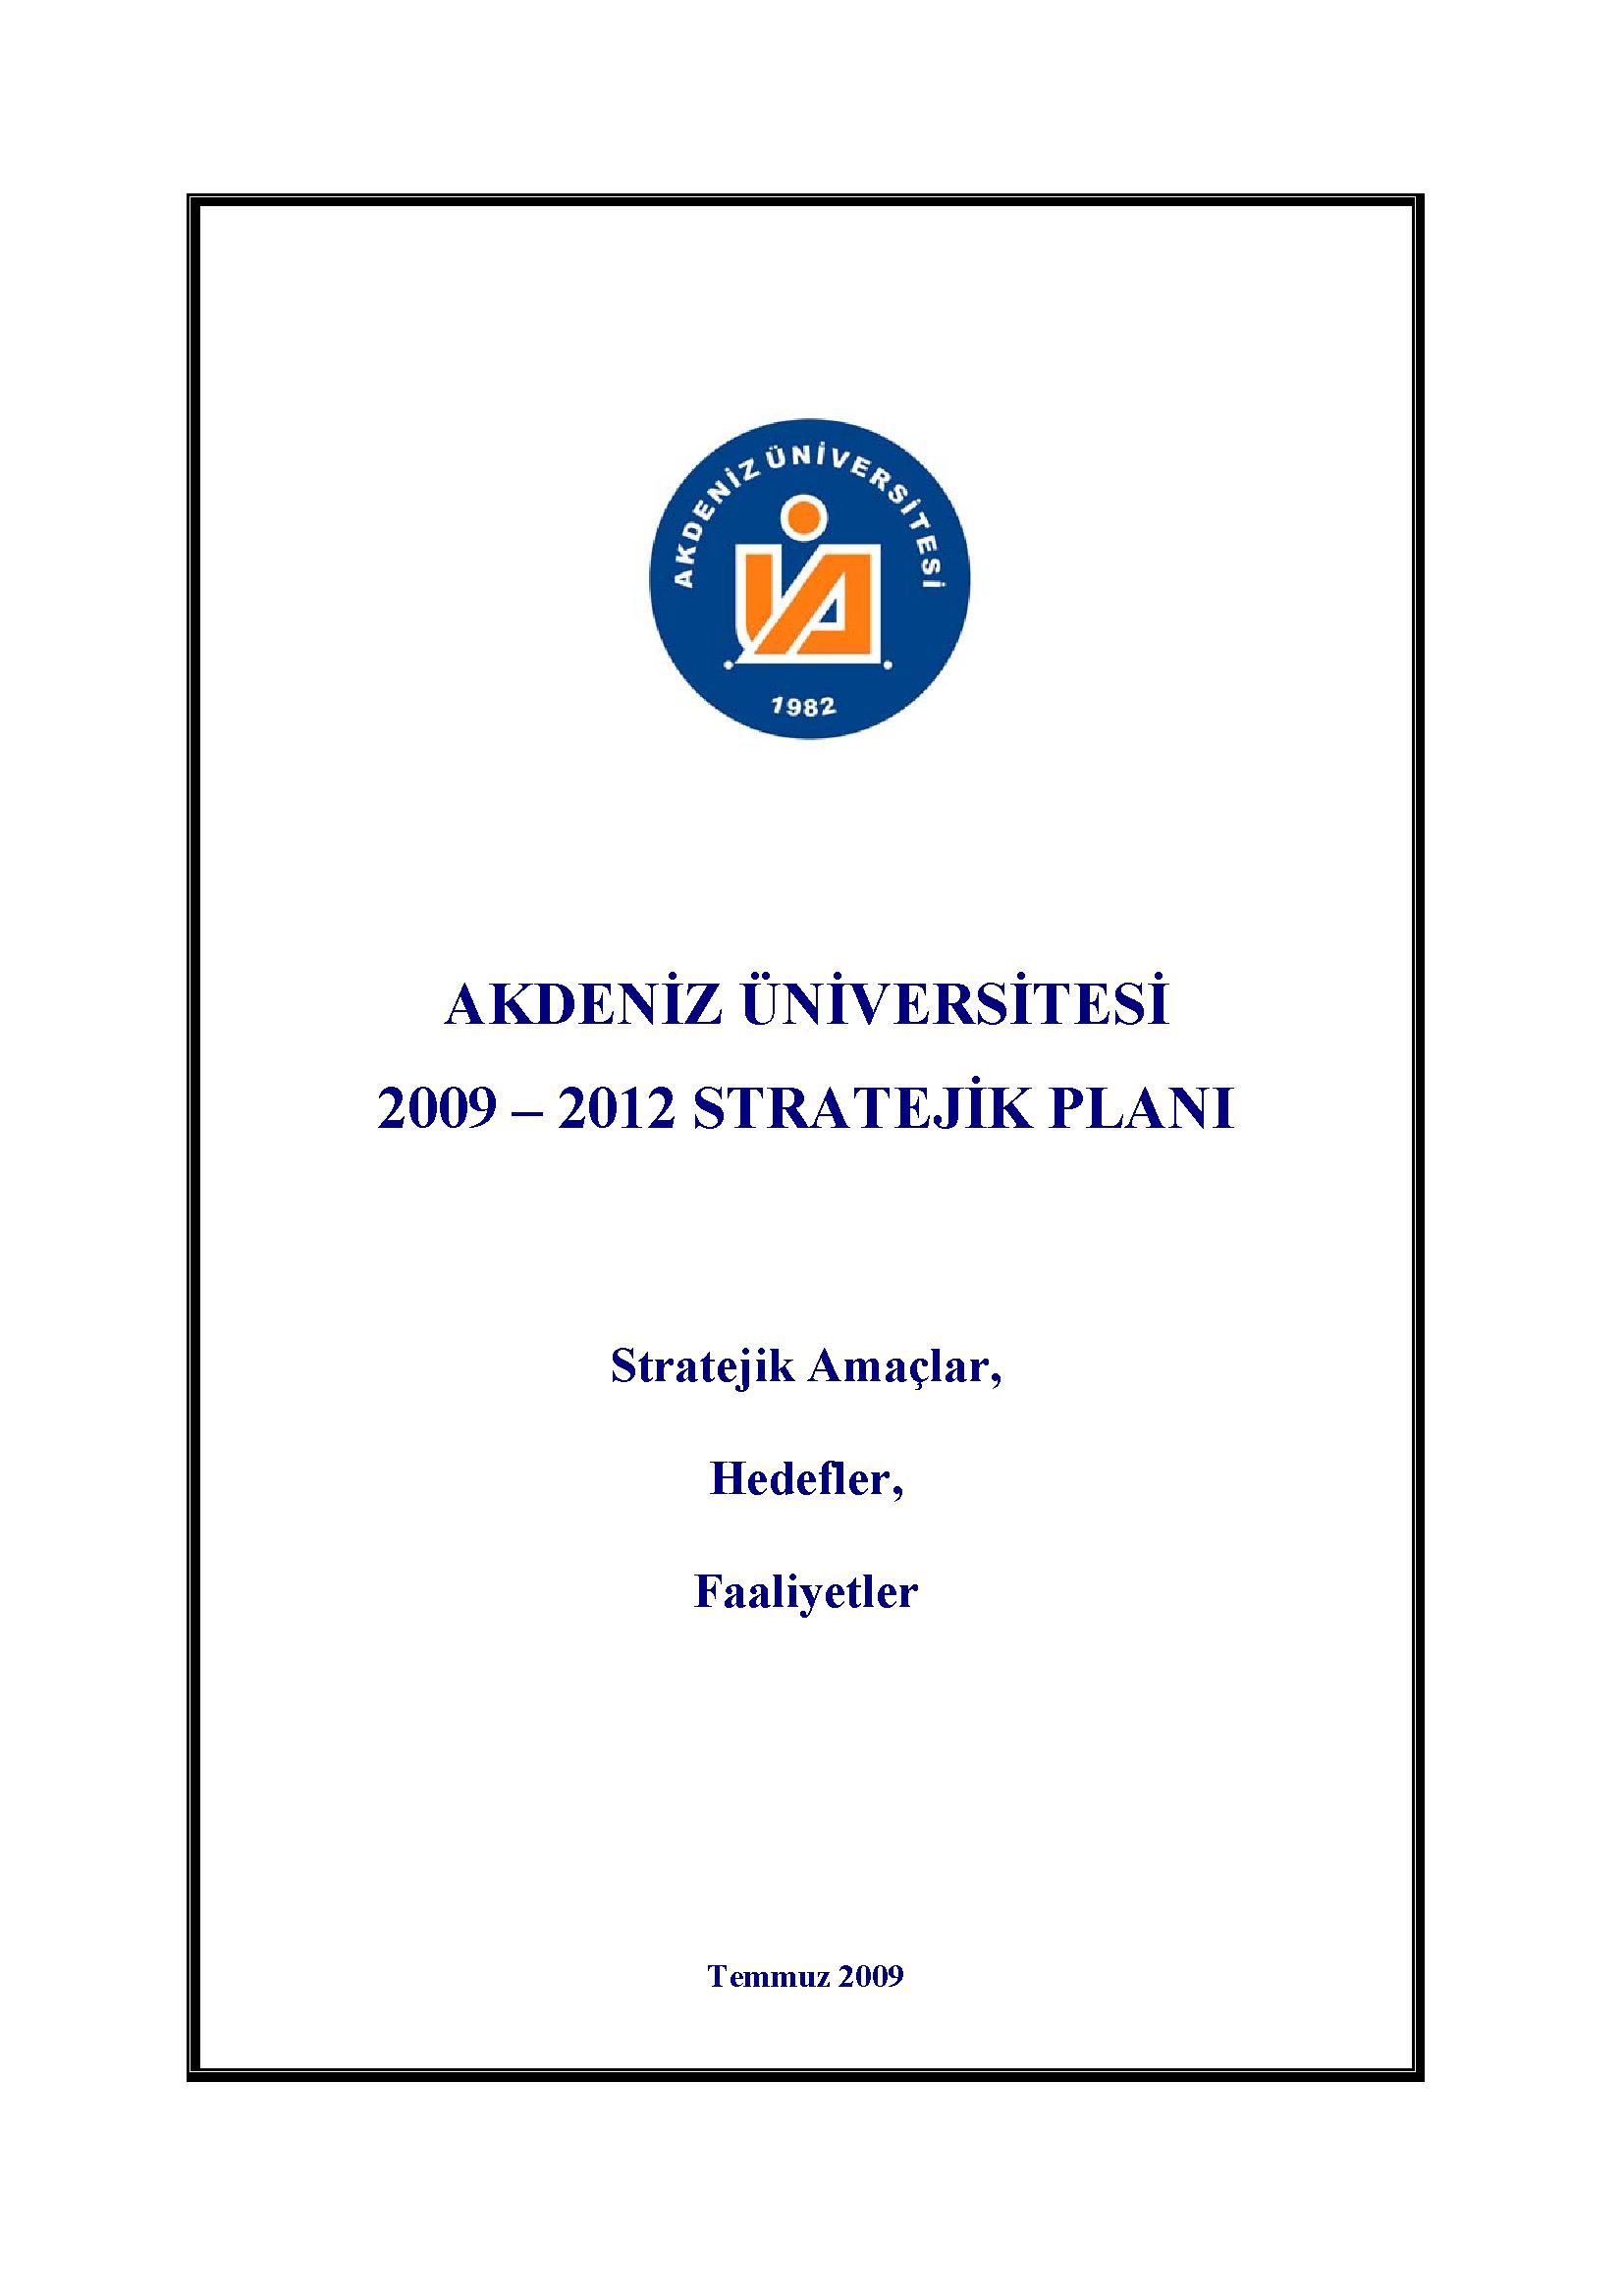 Akdeniz Üniversitesi 2009 - 2012 Stratejik Planı